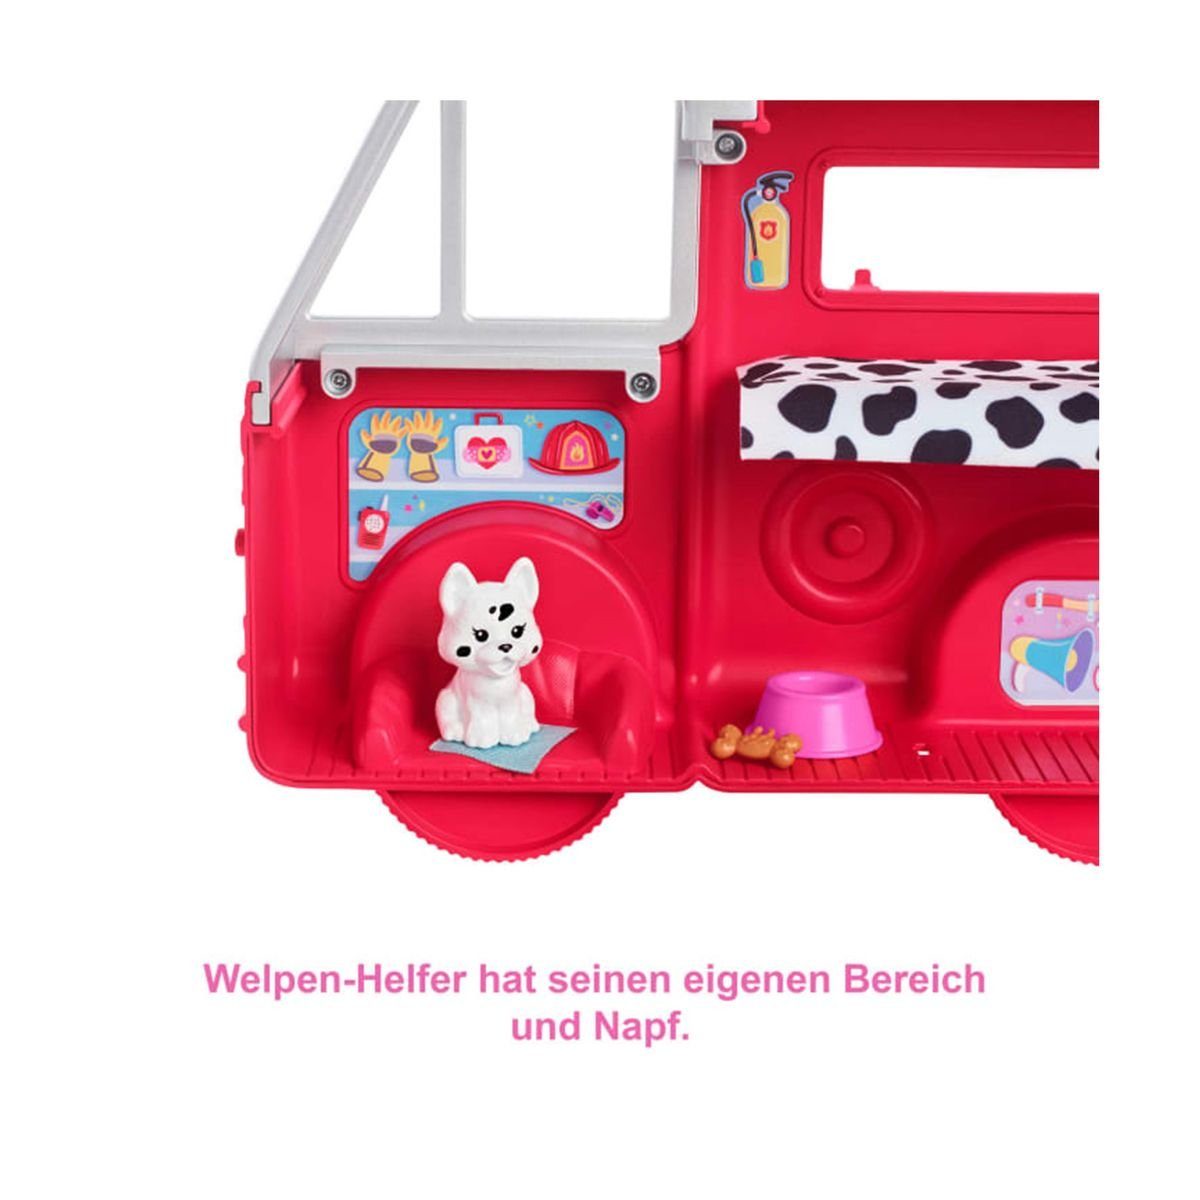 Fahrzeug - be... Mattel - mit Spielset Zubehör, Puppen HCK73 Mattel can - GmbH Feuerwehrauto Mattel® Barbie Chelsea